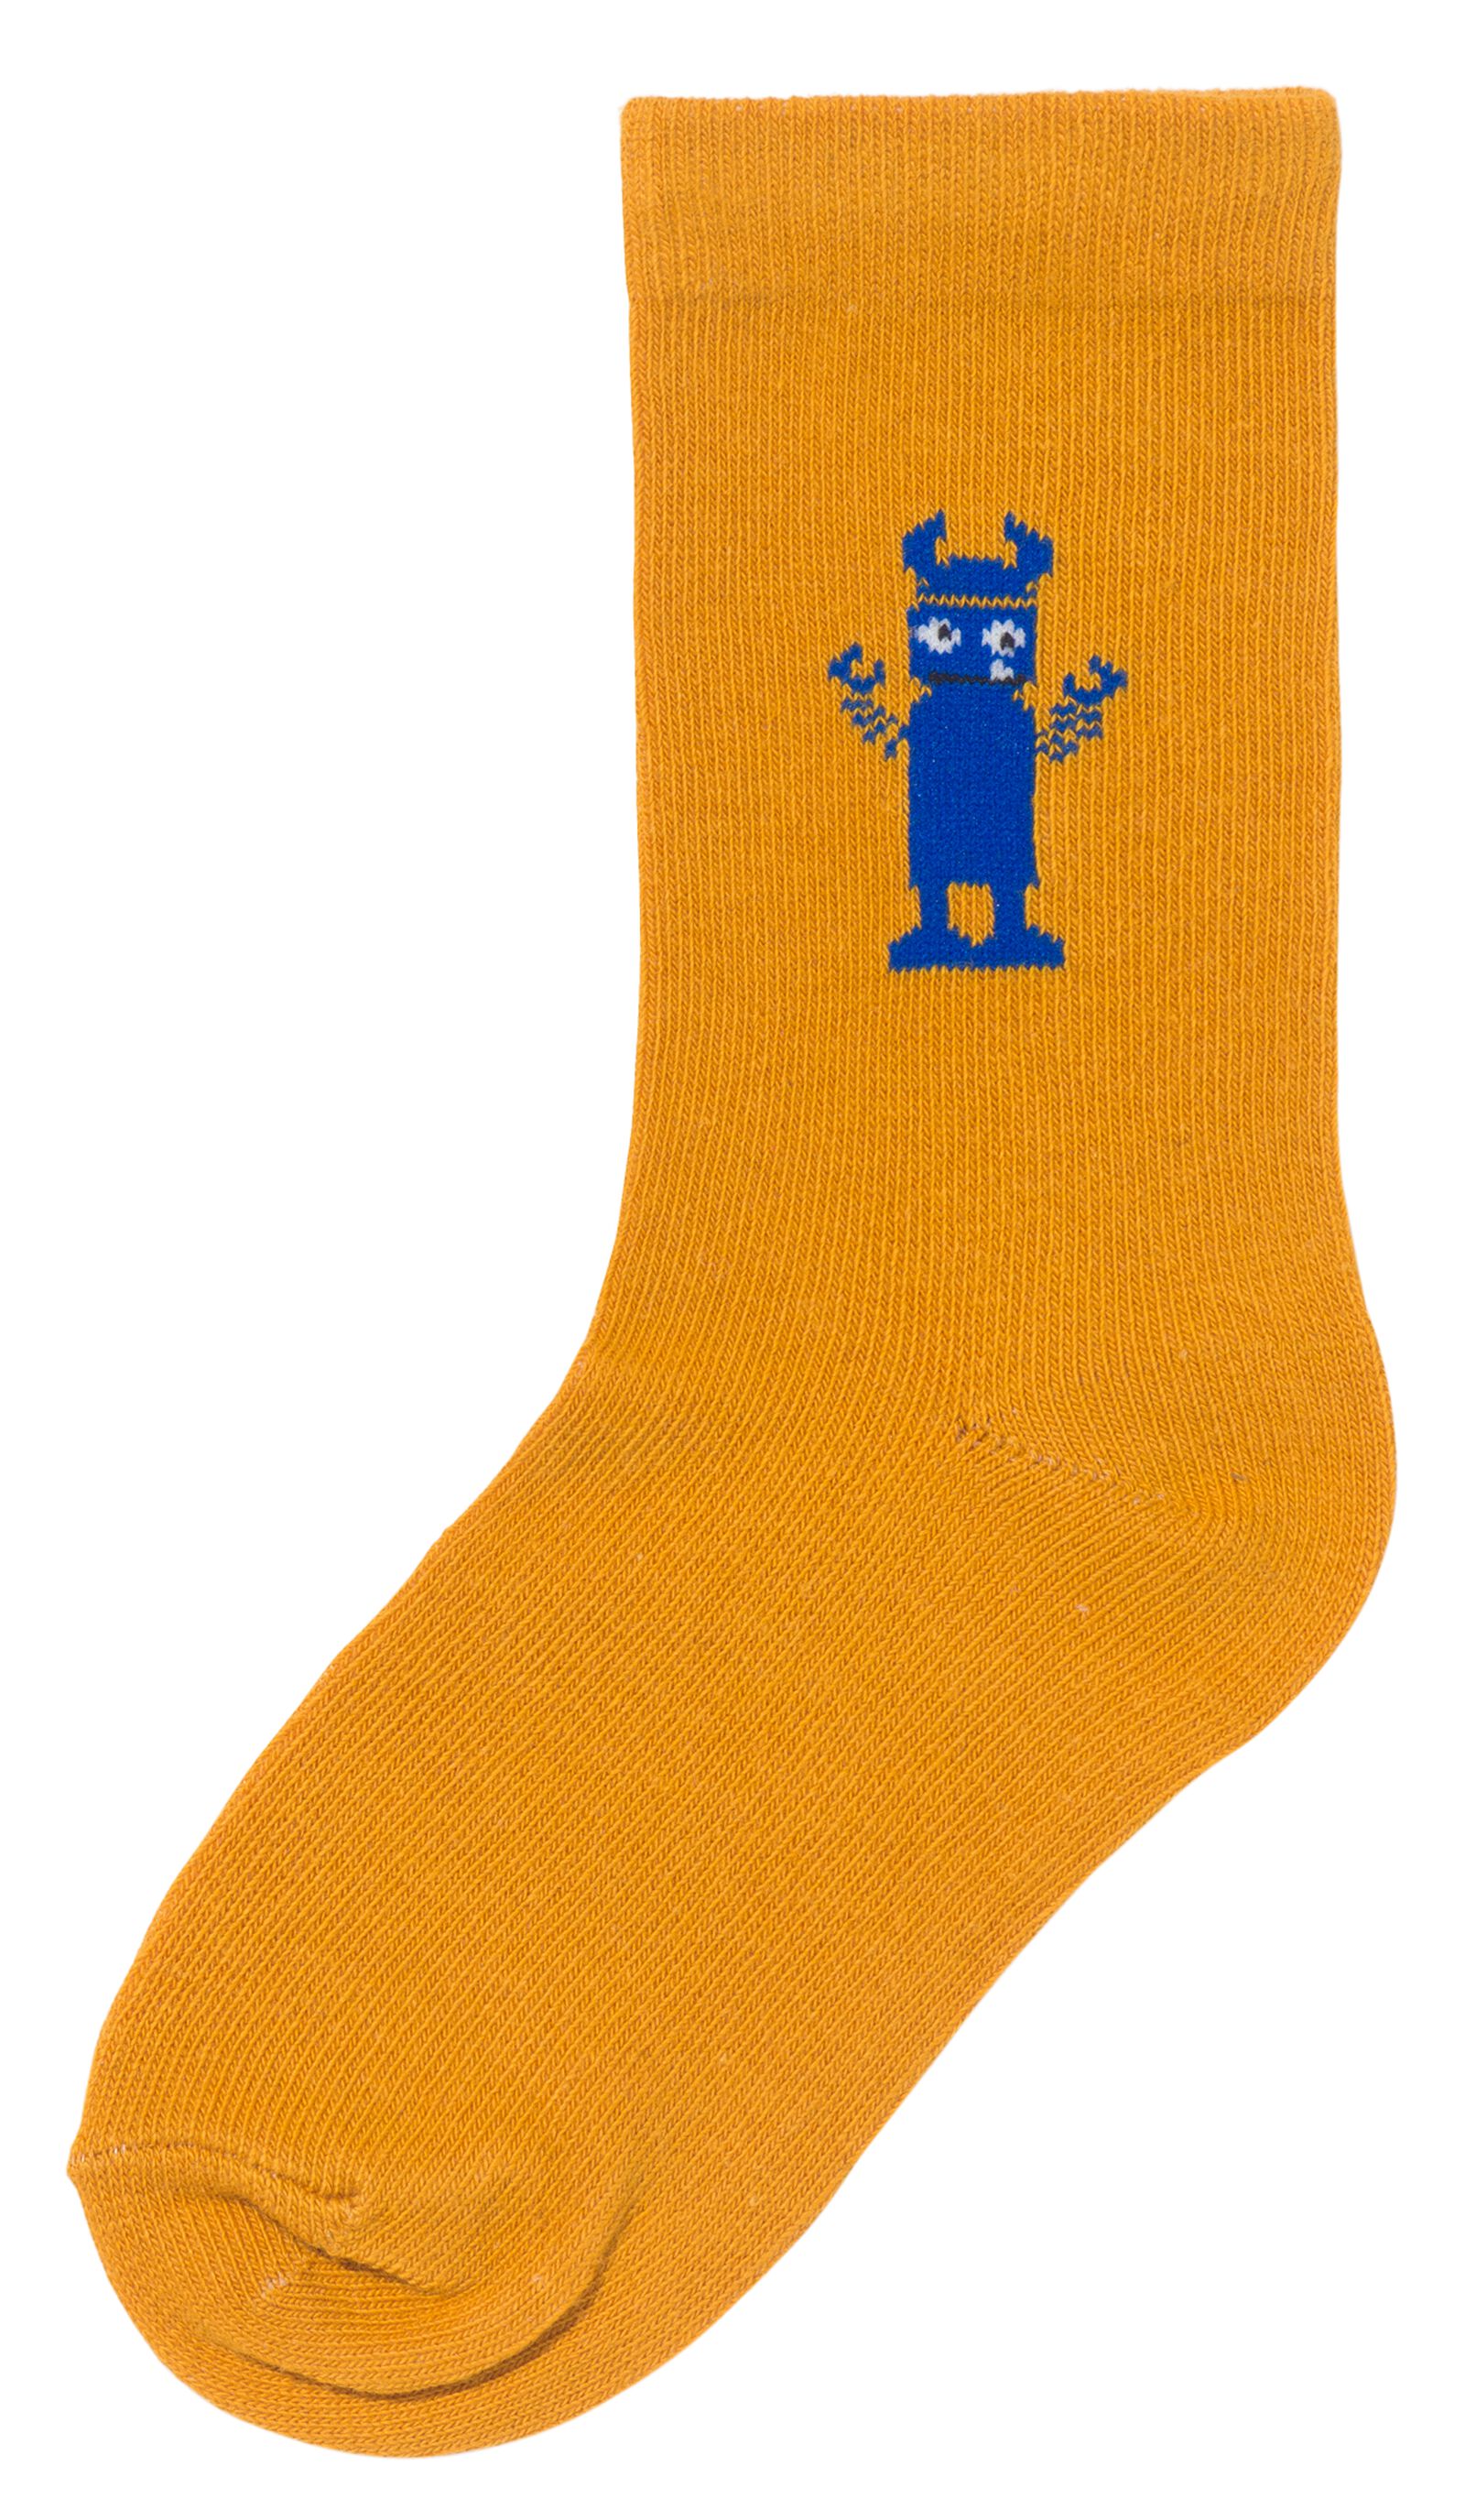 kinder sokken met katoen - 5 paar blauw 31/34 - 4360063 - HEMA